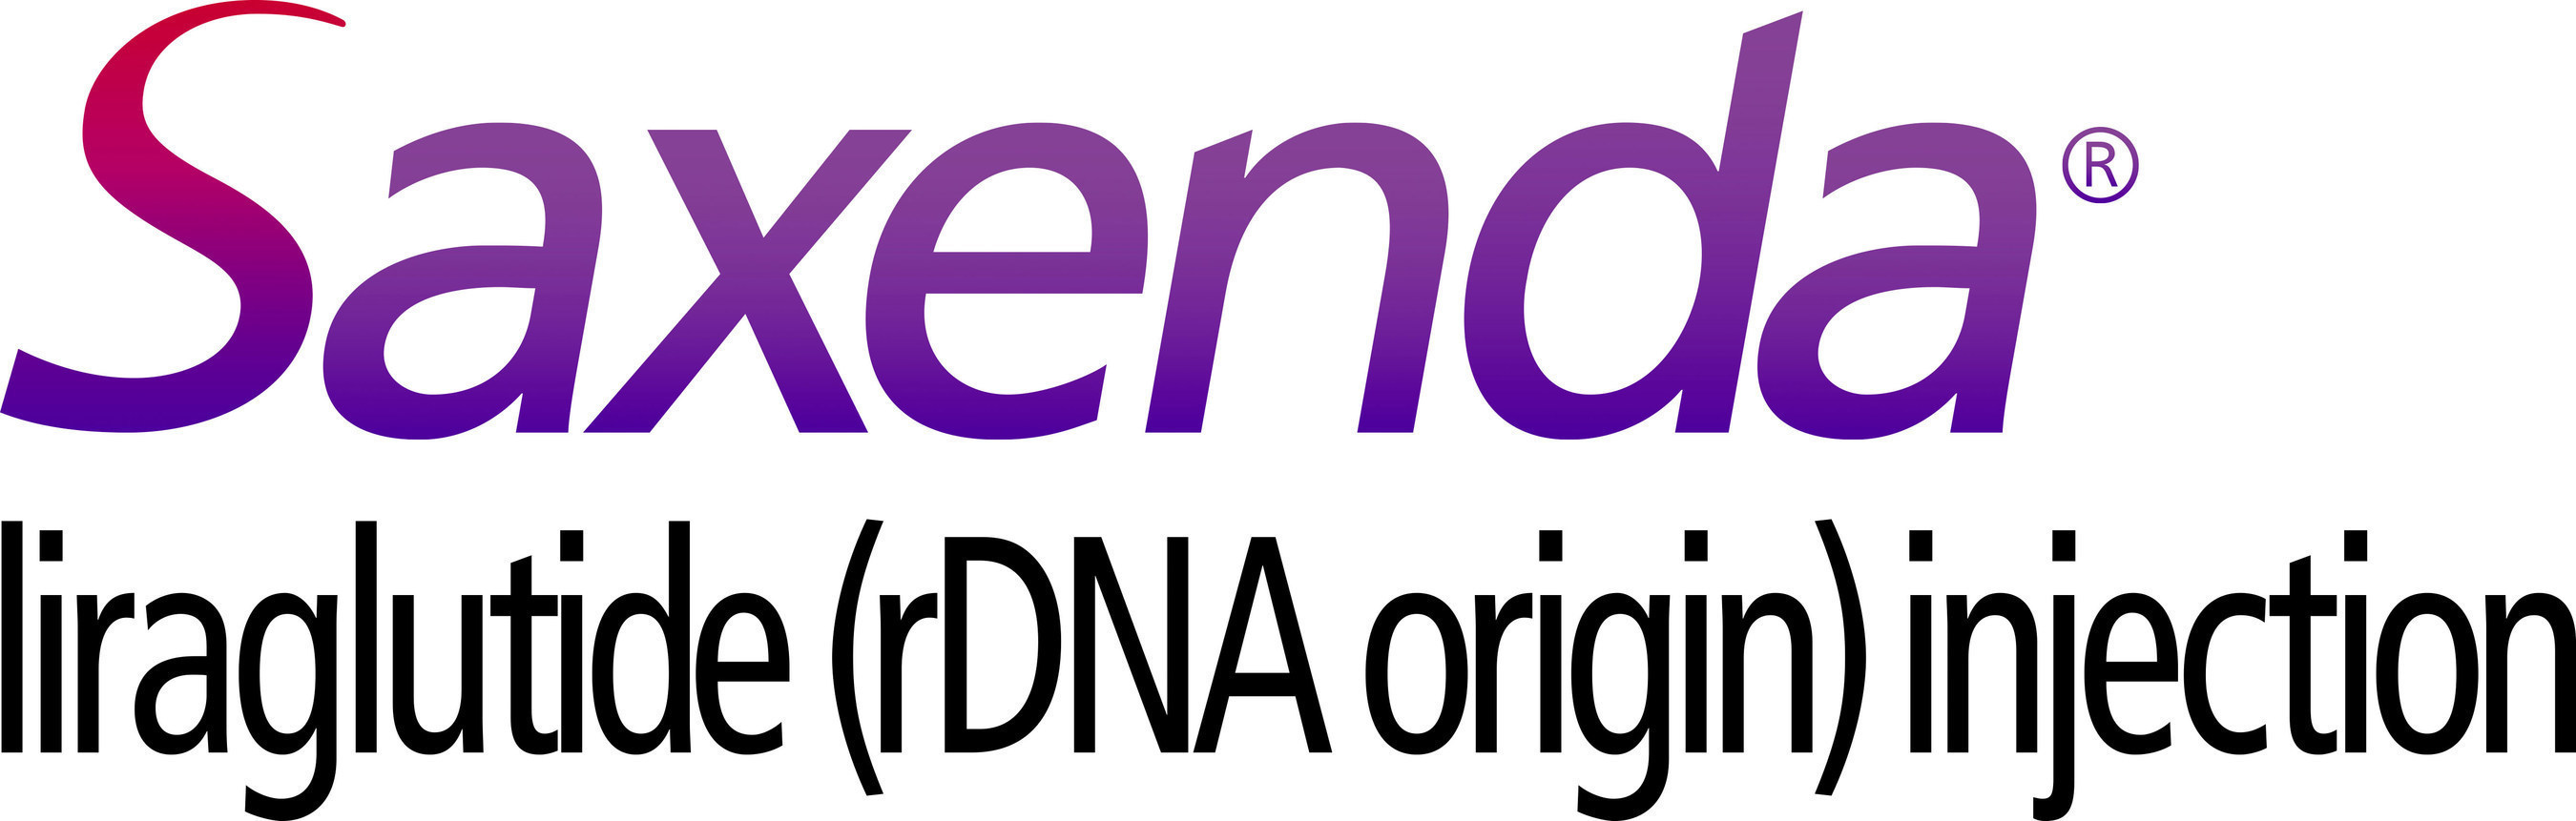 Saxenda(R) (liraglutide [rDNA origin] injection) logo. Please see full Prescribing Information, including Boxed Warning, for Saxenda(R) at Saxenda.com